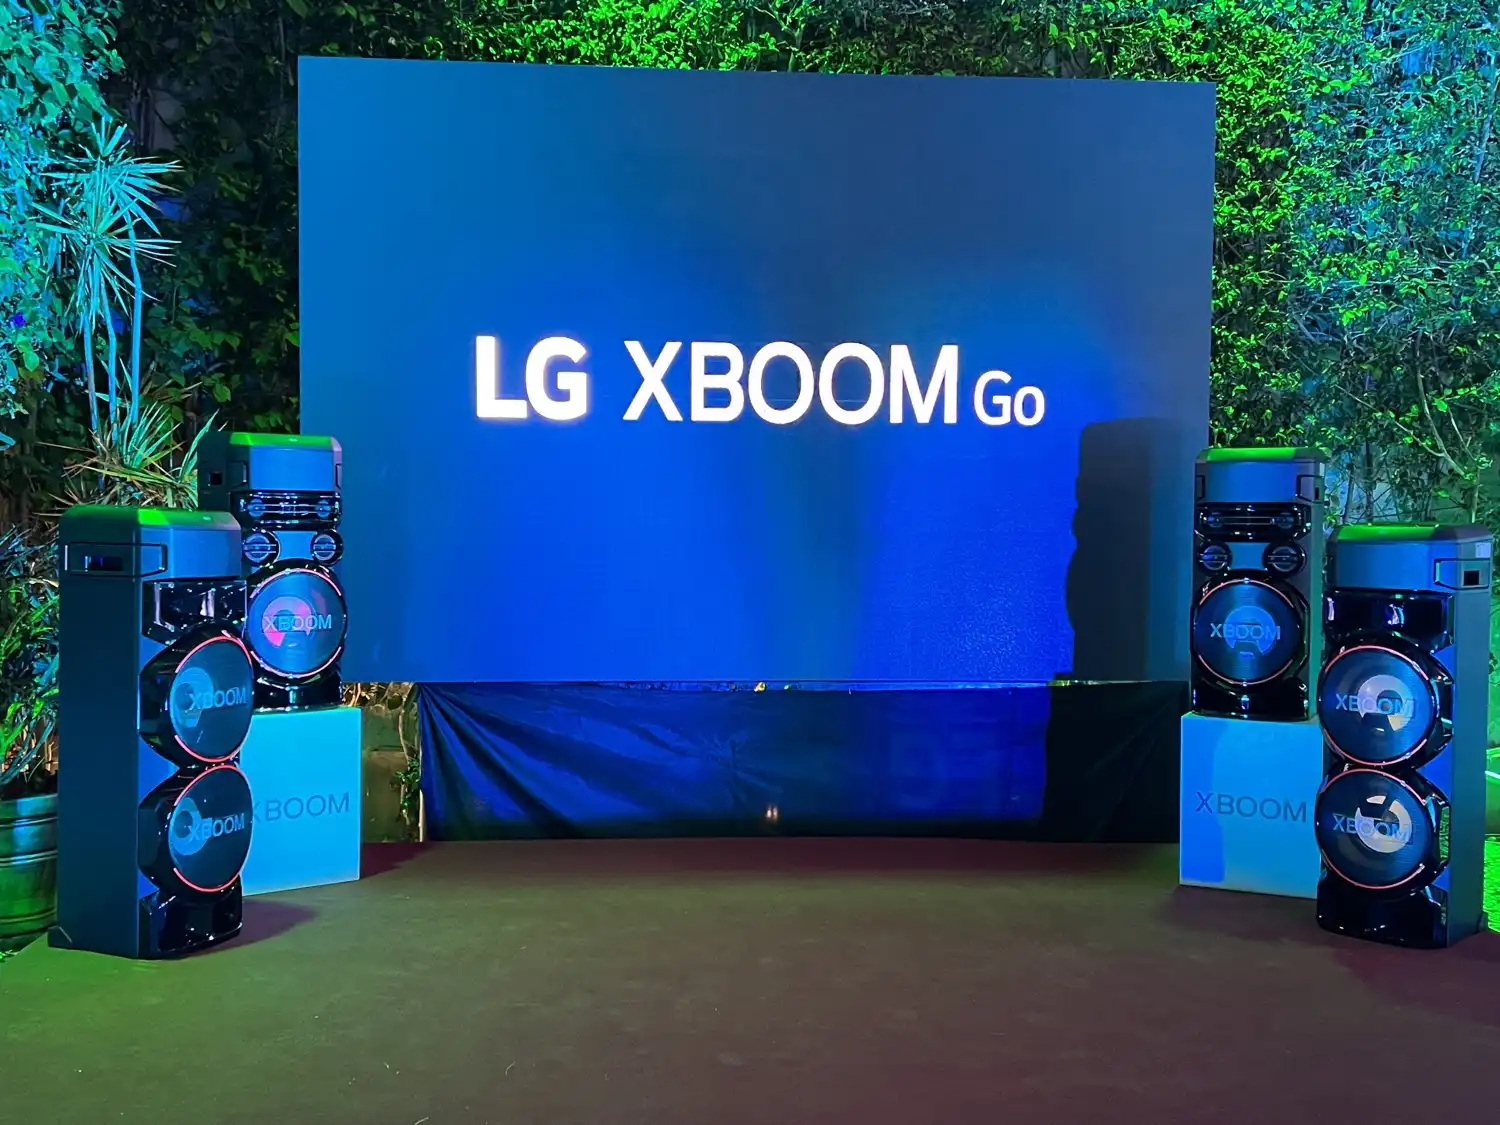 La serie LG XBoom Go llegó a Perú